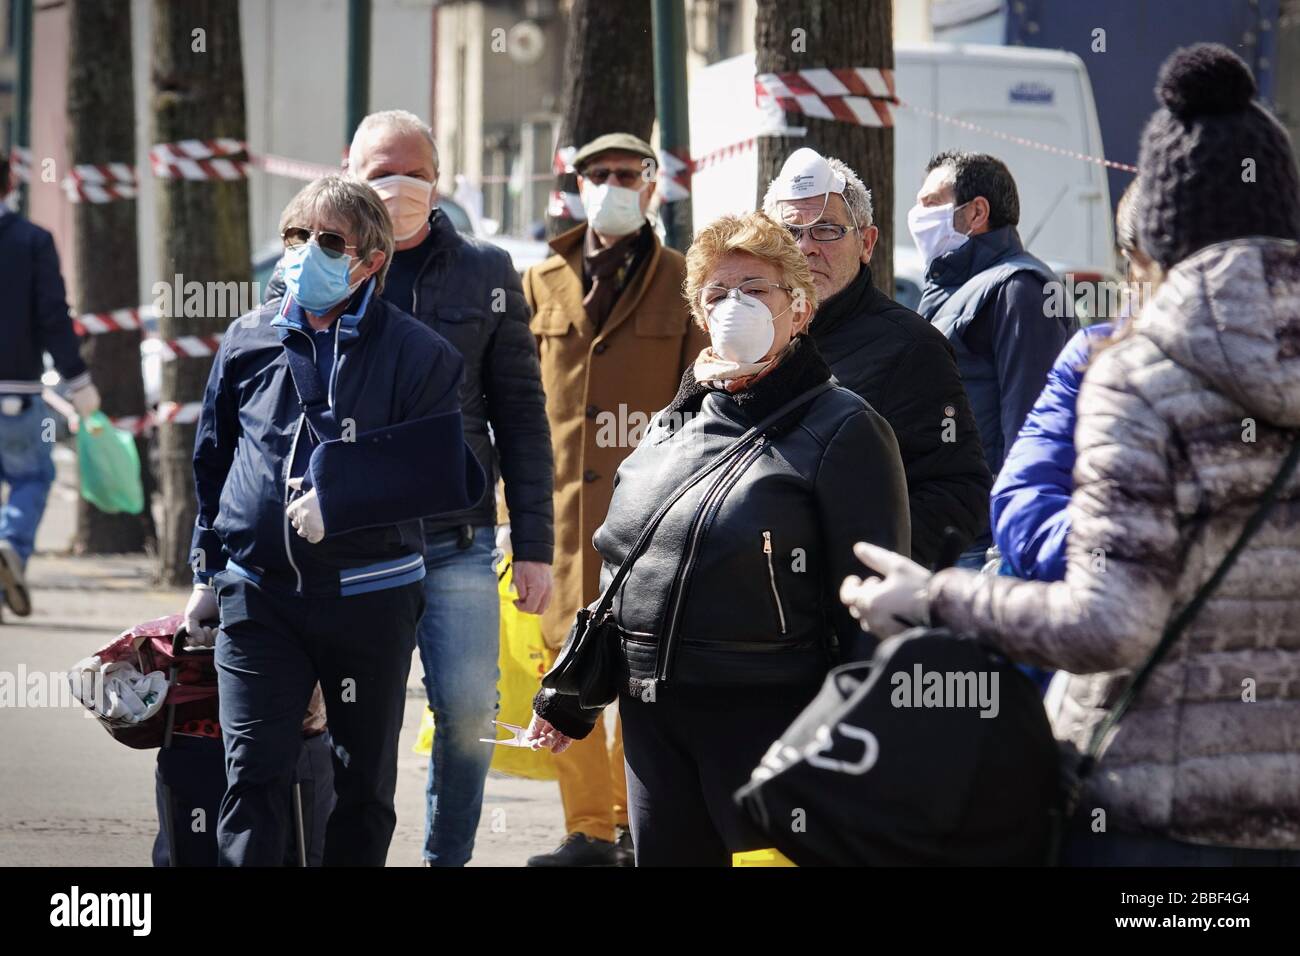 Persone sul mercato, con maschere facciali per la protezione da COVID-19. Torino, Italia - Marzo 2020 Foto Stock